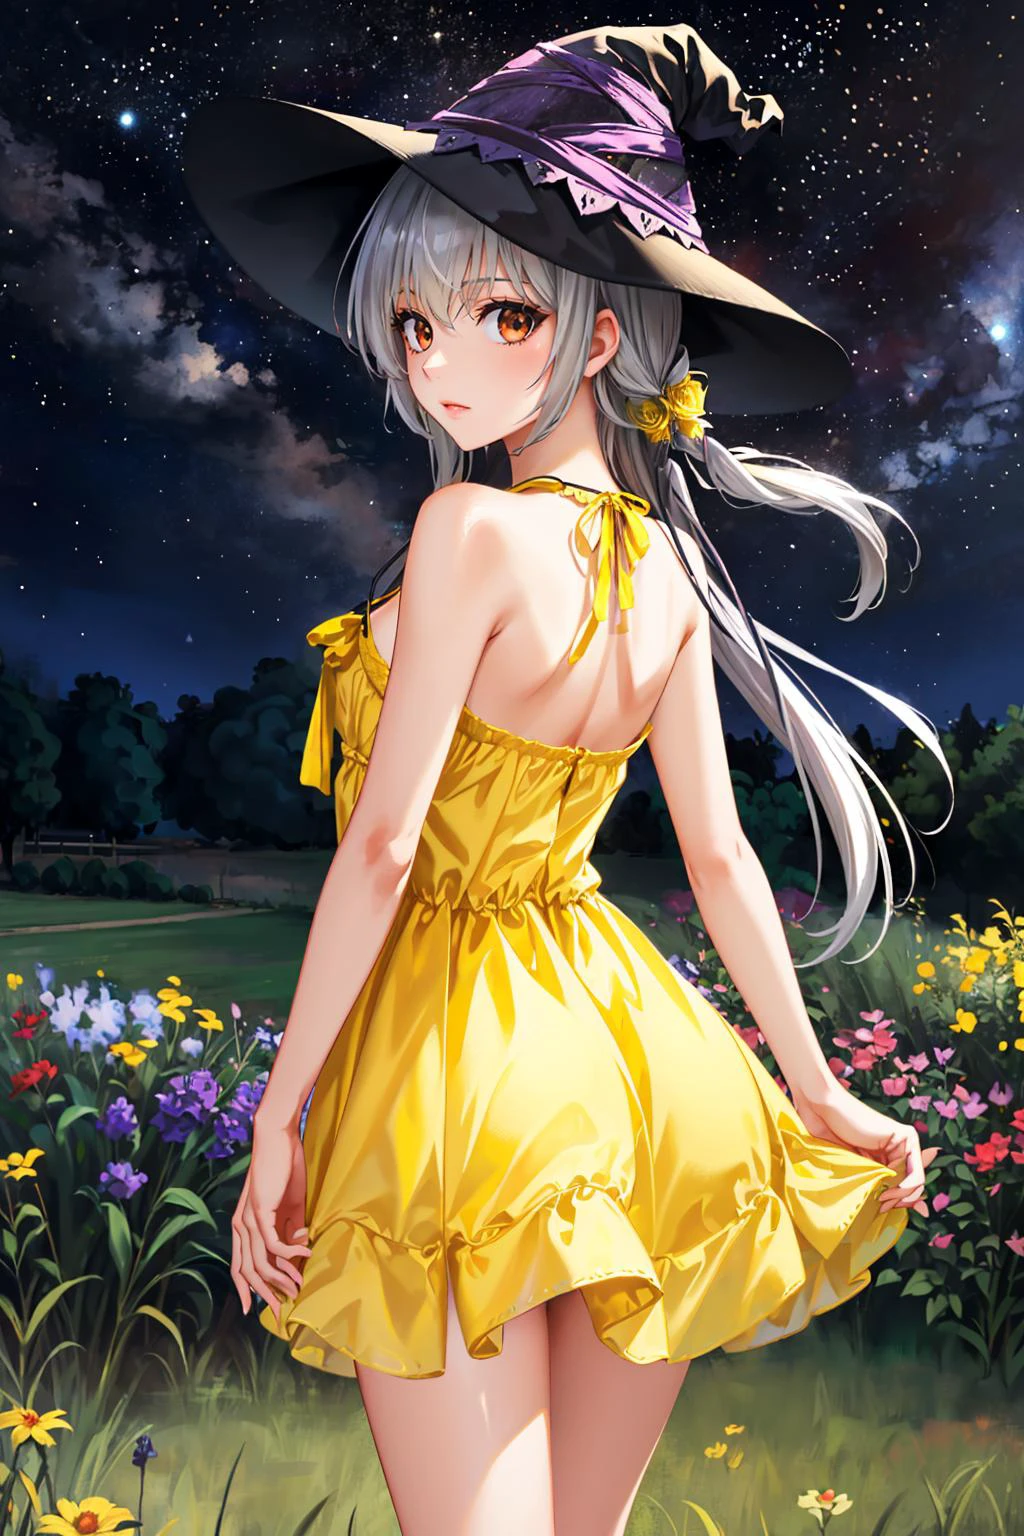 تحفة, أفضل جودة, كاميشيرو أليس, قبعة الساحرة, من وراء, (فستان الشمس الأصفر:1.3), حديقة, سماء الليل edgeYSD,woman wearing a فستان الشمس الأصفر